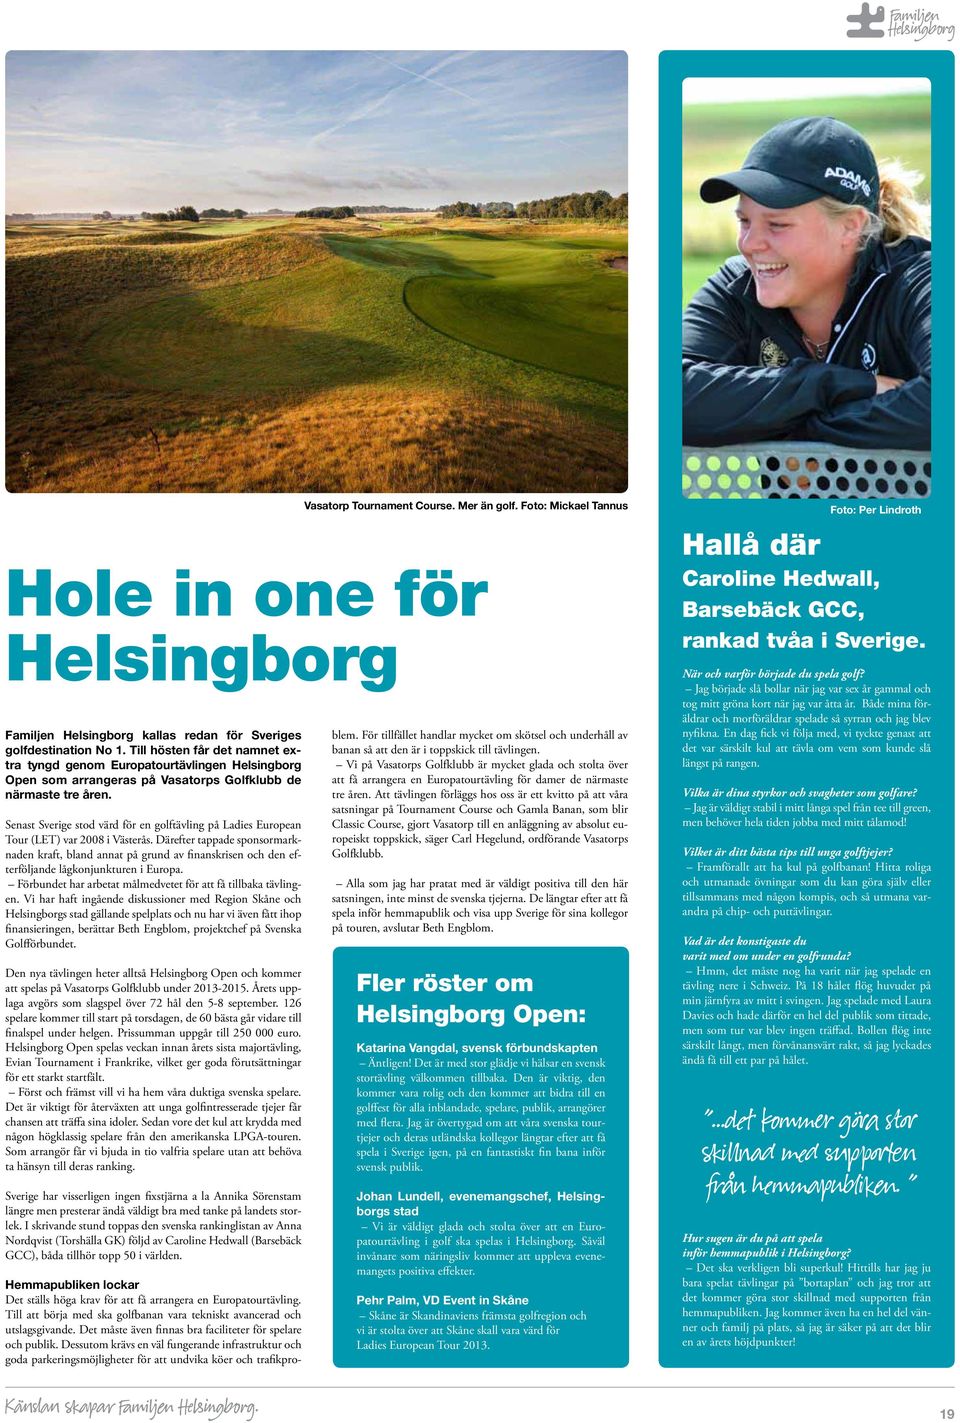 Senast Sverige stod värd för en golftävling på Ladies European Tour (LET) var 2008 i Västerås.